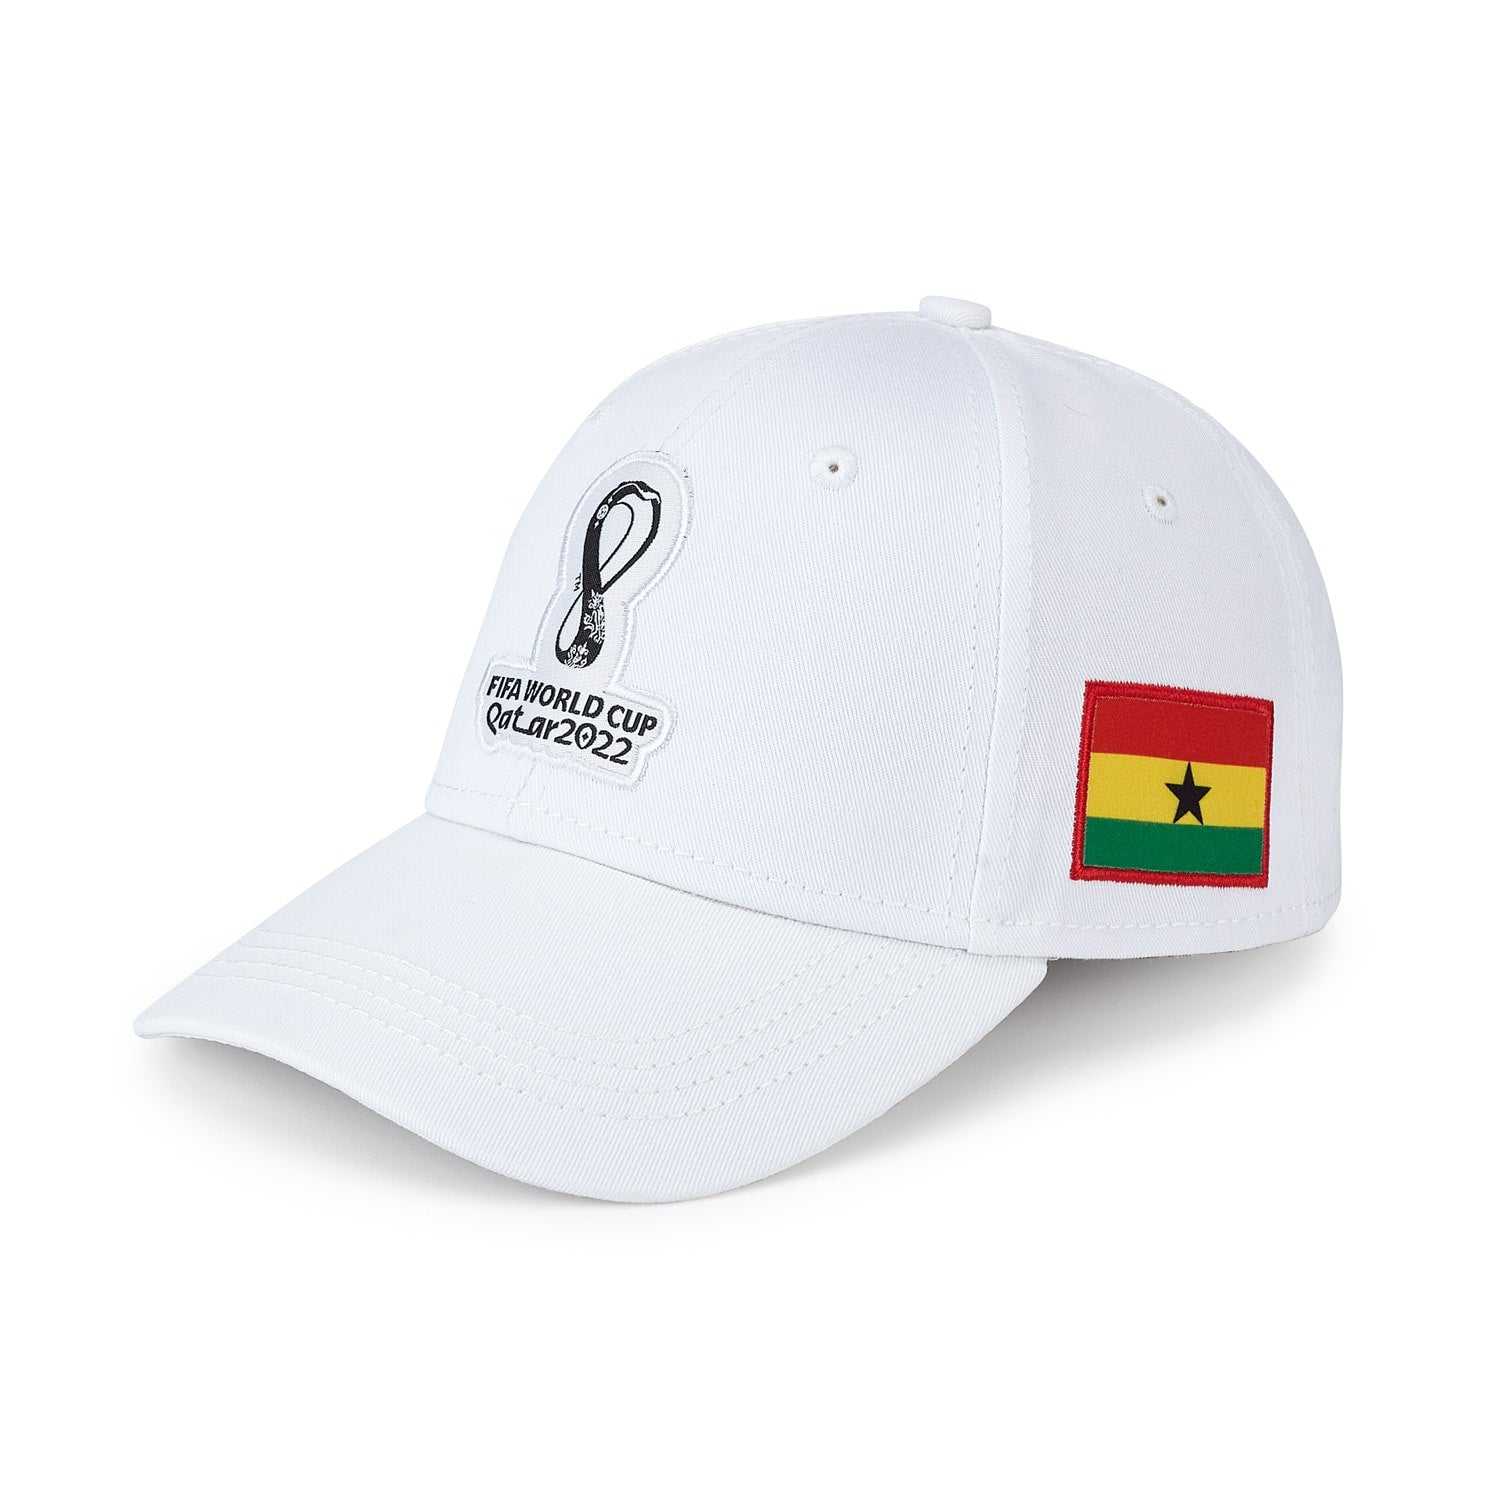 2022 World Cup Ghana White Cap - Men's